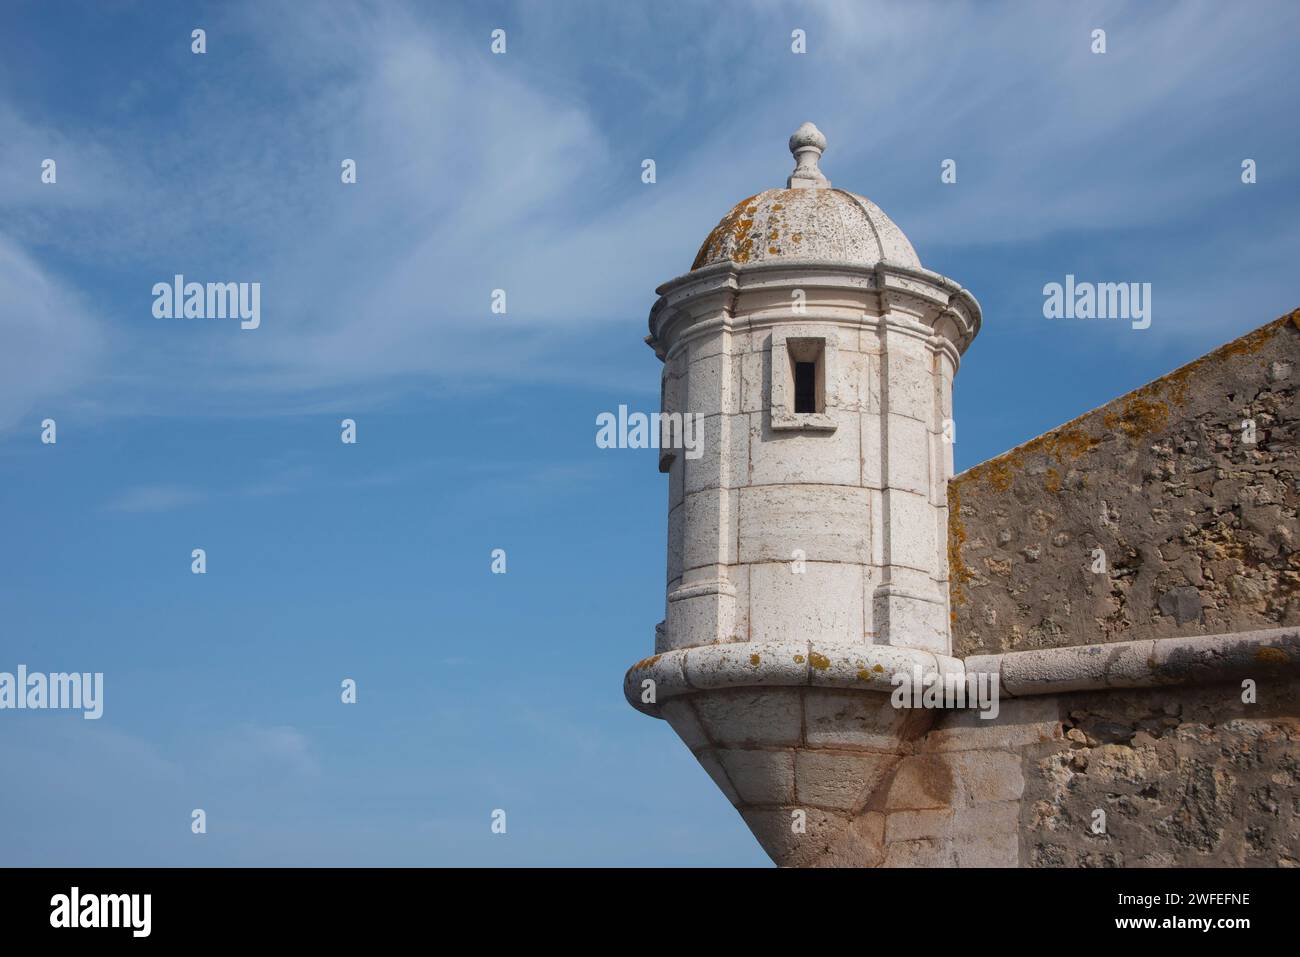 Torre de mirador, Forte da Ponta da Bandeira, lagos, Portugal Foto de stock